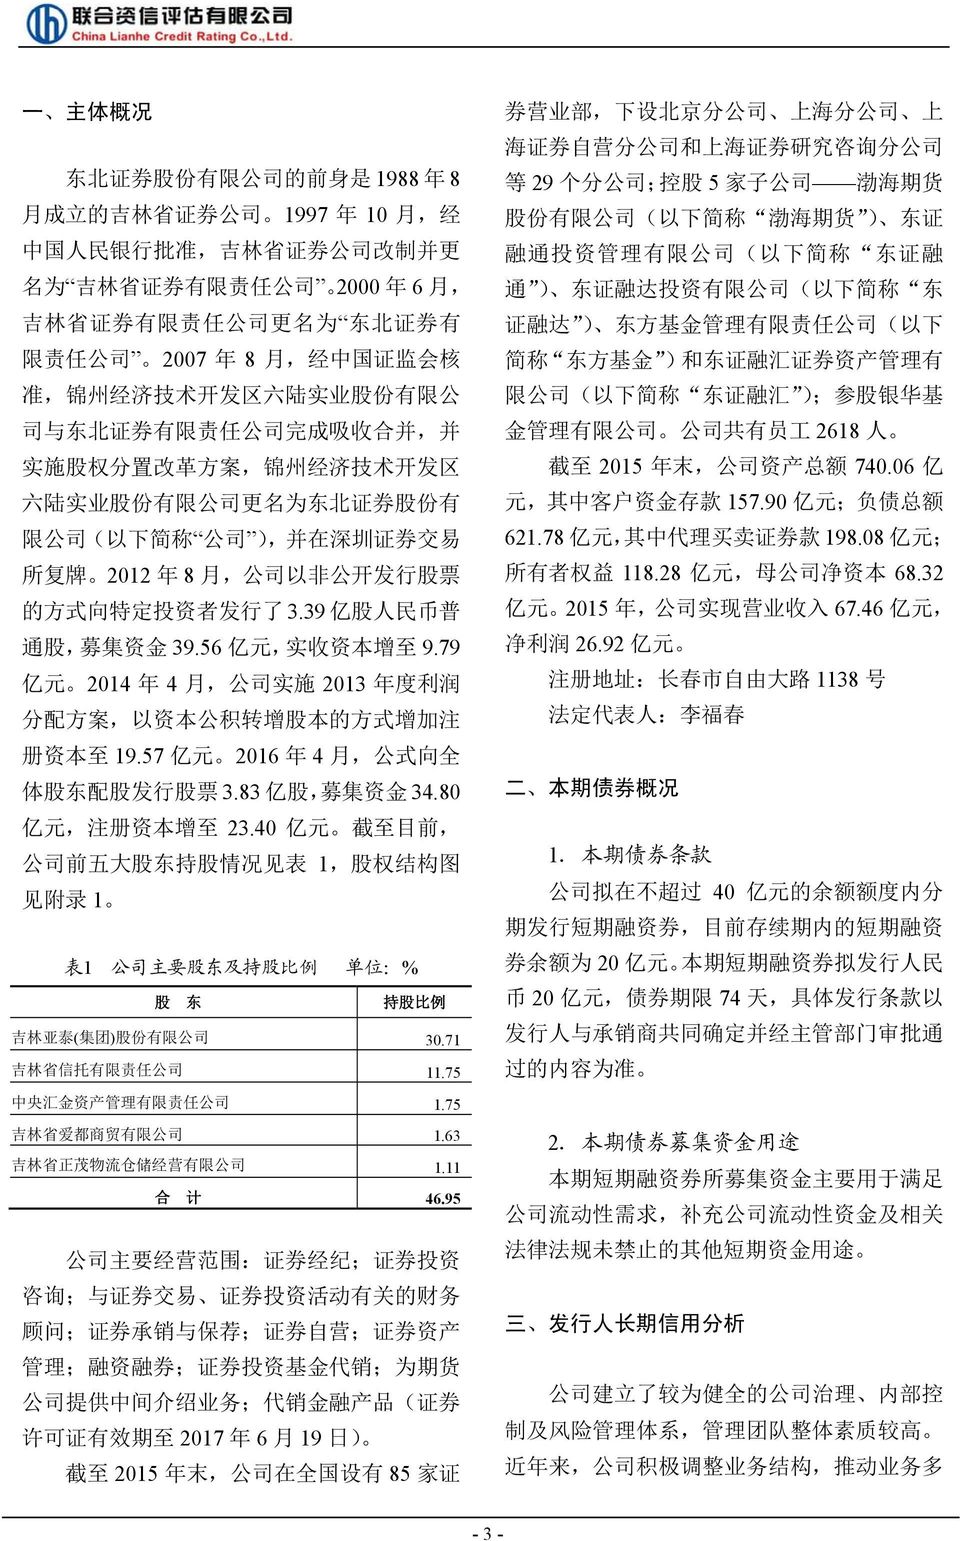 ( 以 下 简 称 公 司 ), 并 在 深 圳 证 券 交 易 所 复 牌 2012 年 8 月, 公 司 以 非 公 开 发 行 股 票 的 方 式 向 特 定 投 资 者 发 行 了 3.39 亿 股 人 民 币 普 通 股, 募 集 资 金 39.56 亿 元, 实 收 资 本 增 至 9.